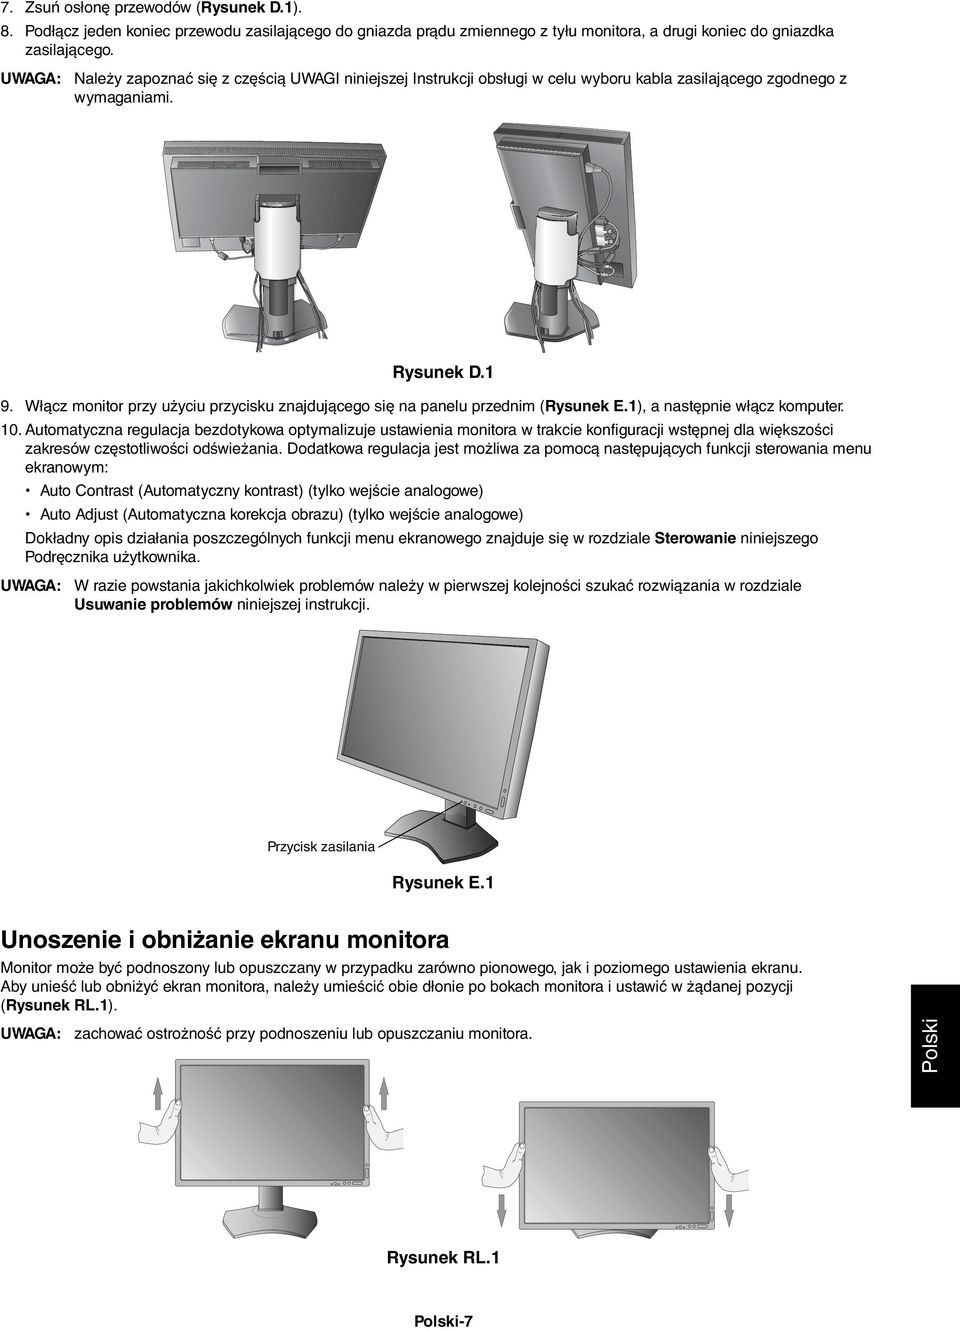 Włącz monitor przy użyciu przycisku znajdującego się na panelu przednim (Rysunek E.1), a następnie włącz komputer. 10.